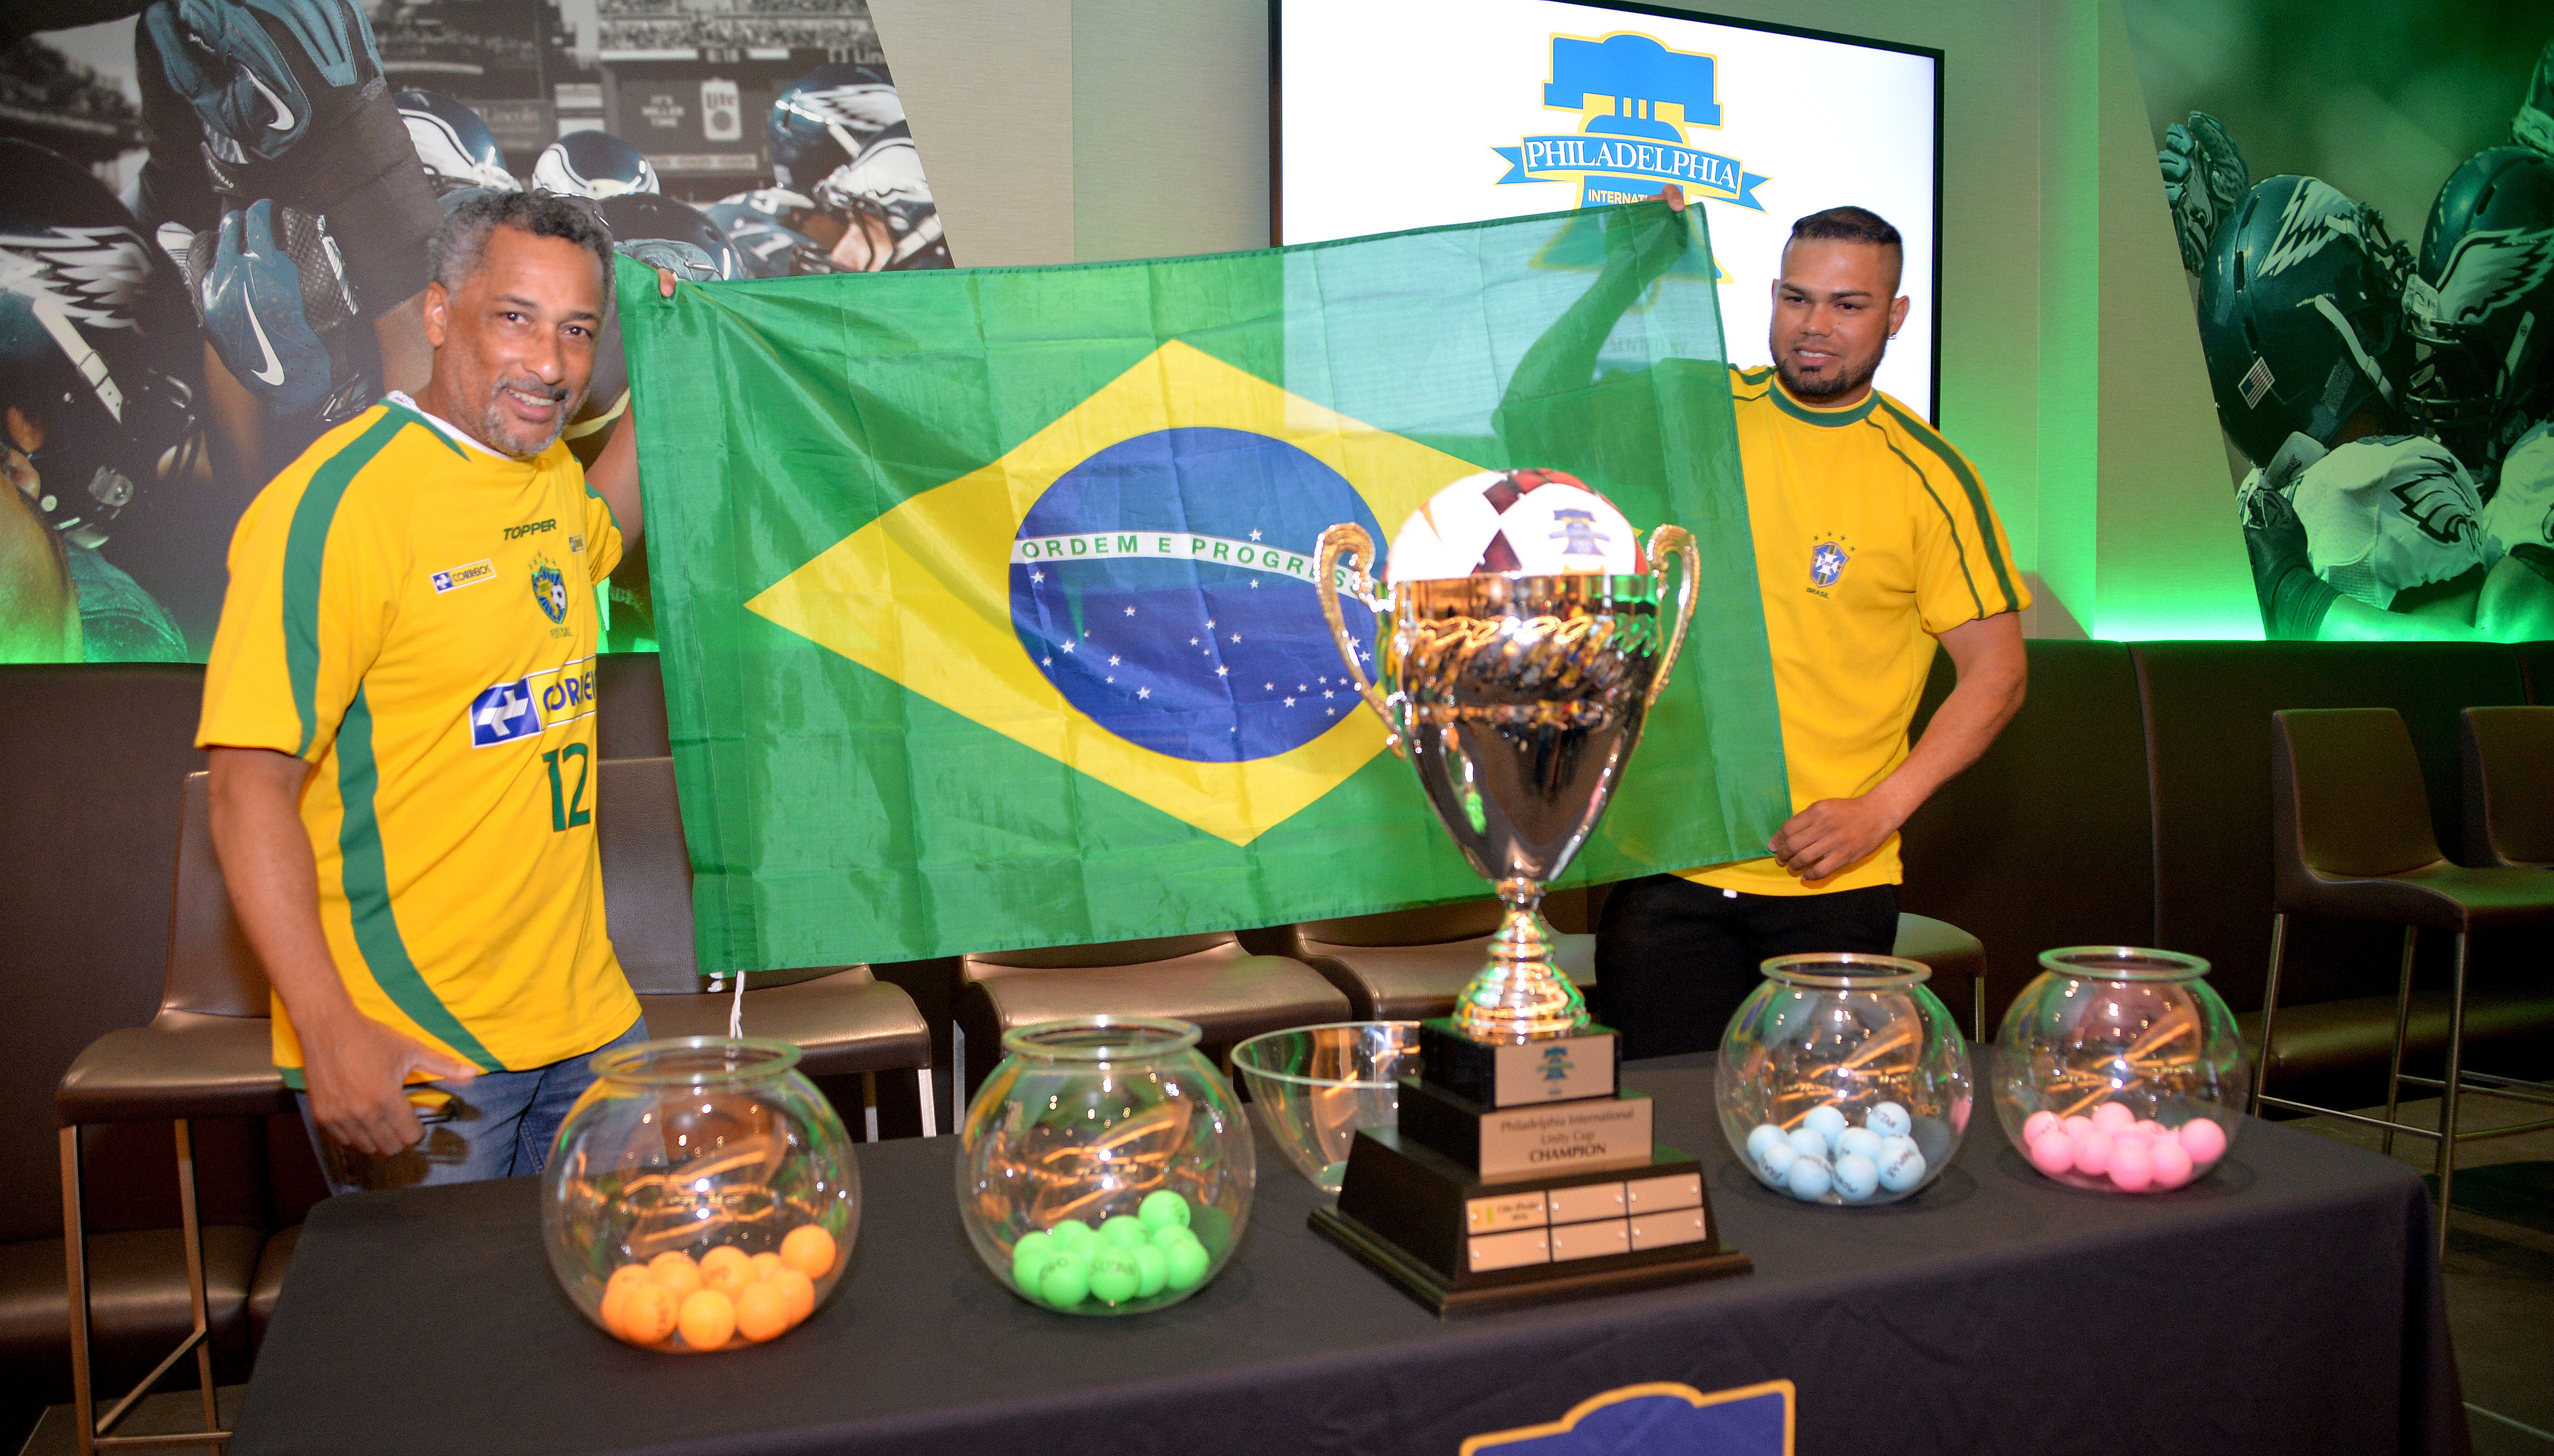 Adenilson Dos Santos y Andre Butra están emocionados pues su país natal, Brasil, estará participando en la Copa Internacional de la Unidad en Filadelfia. Foto: Peter Fitzpatrick/AL DÍA News.